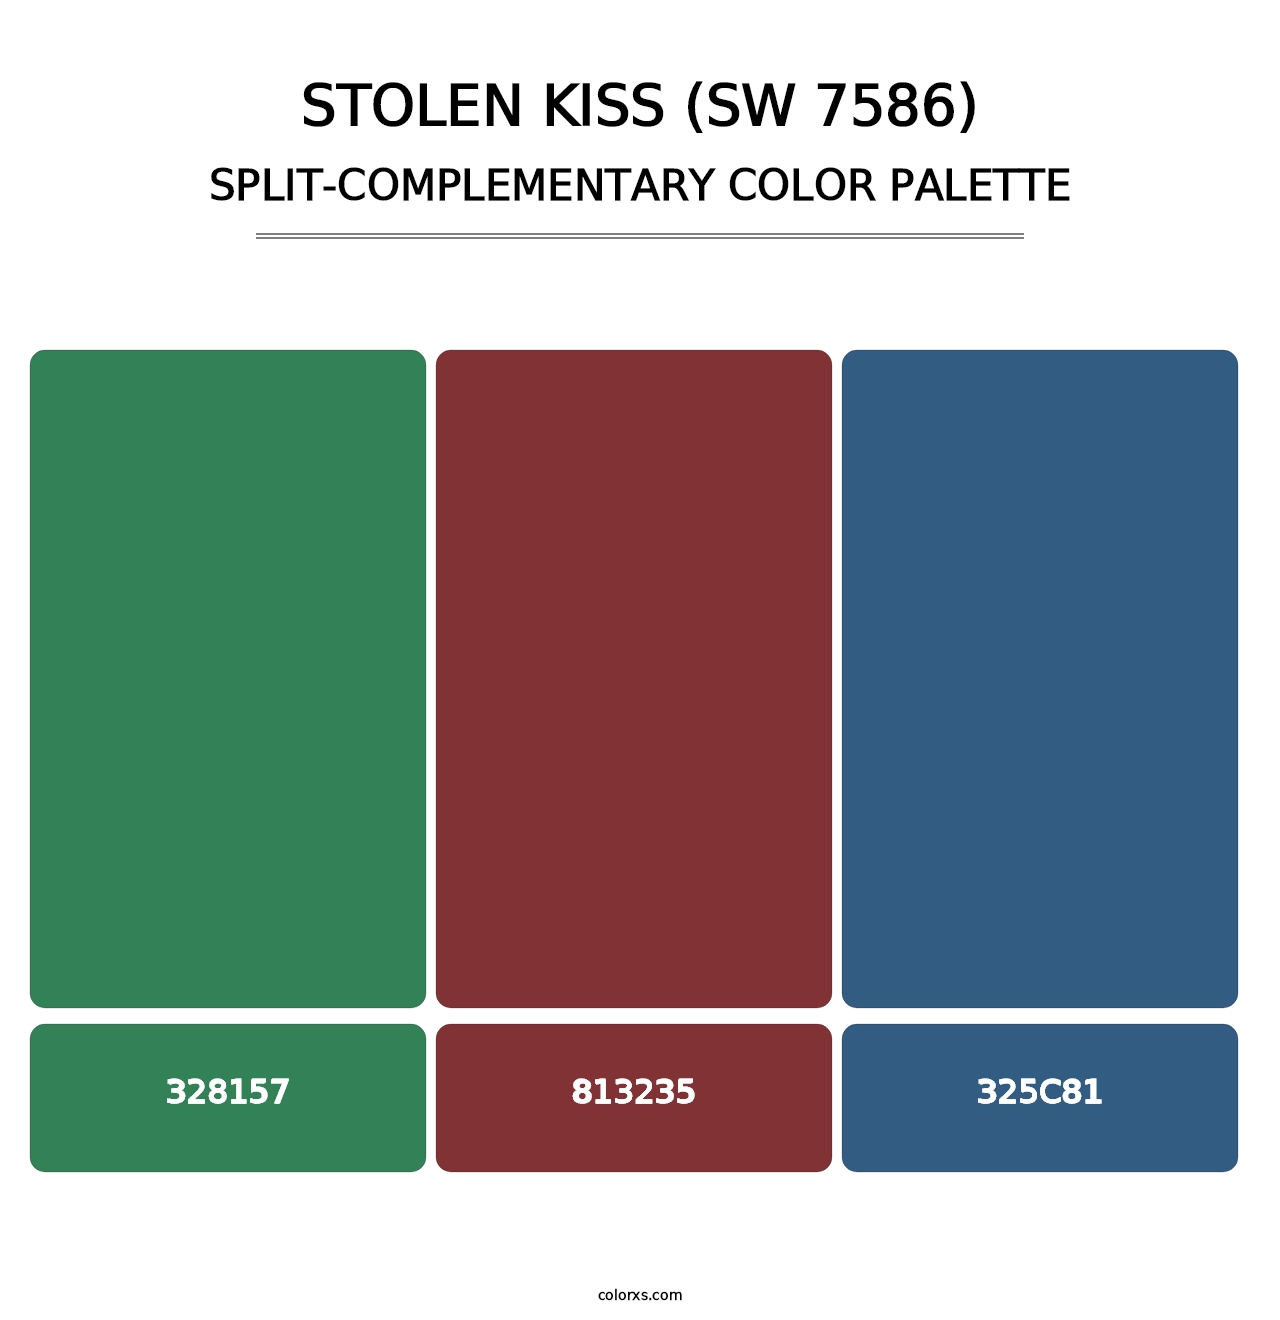 Stolen Kiss (SW 7586) - Split-Complementary Color Palette